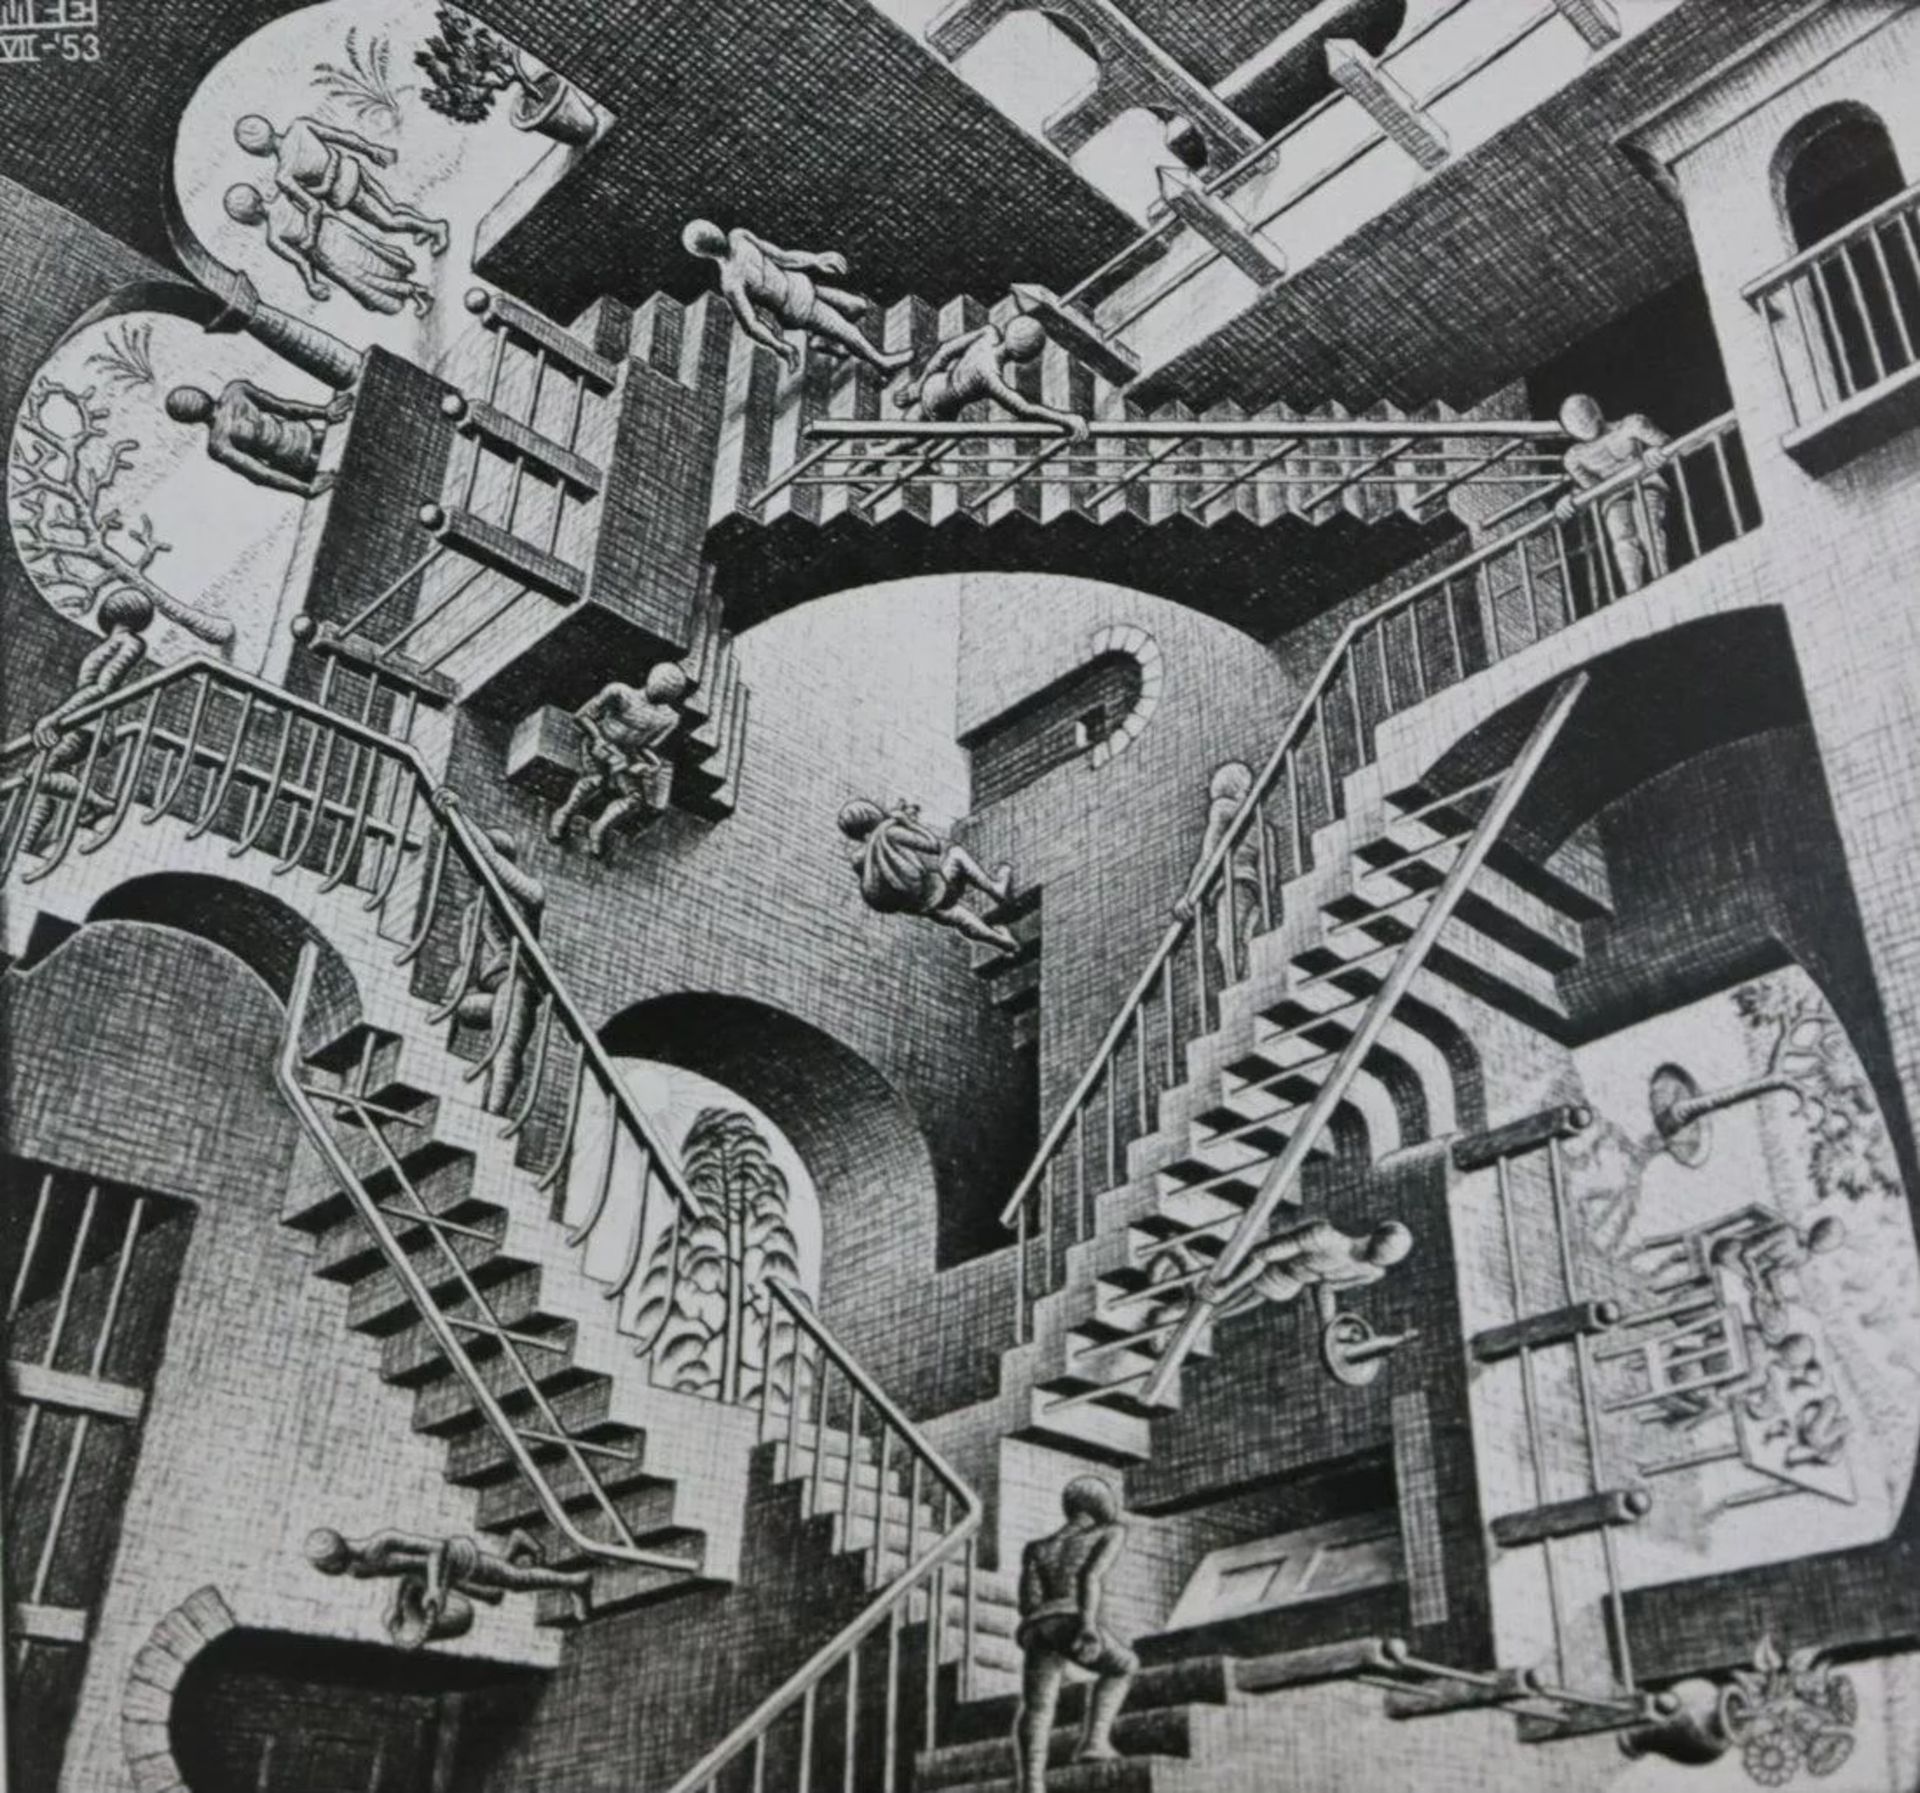 M.C. Escher - Relativity, Offset Lithograph